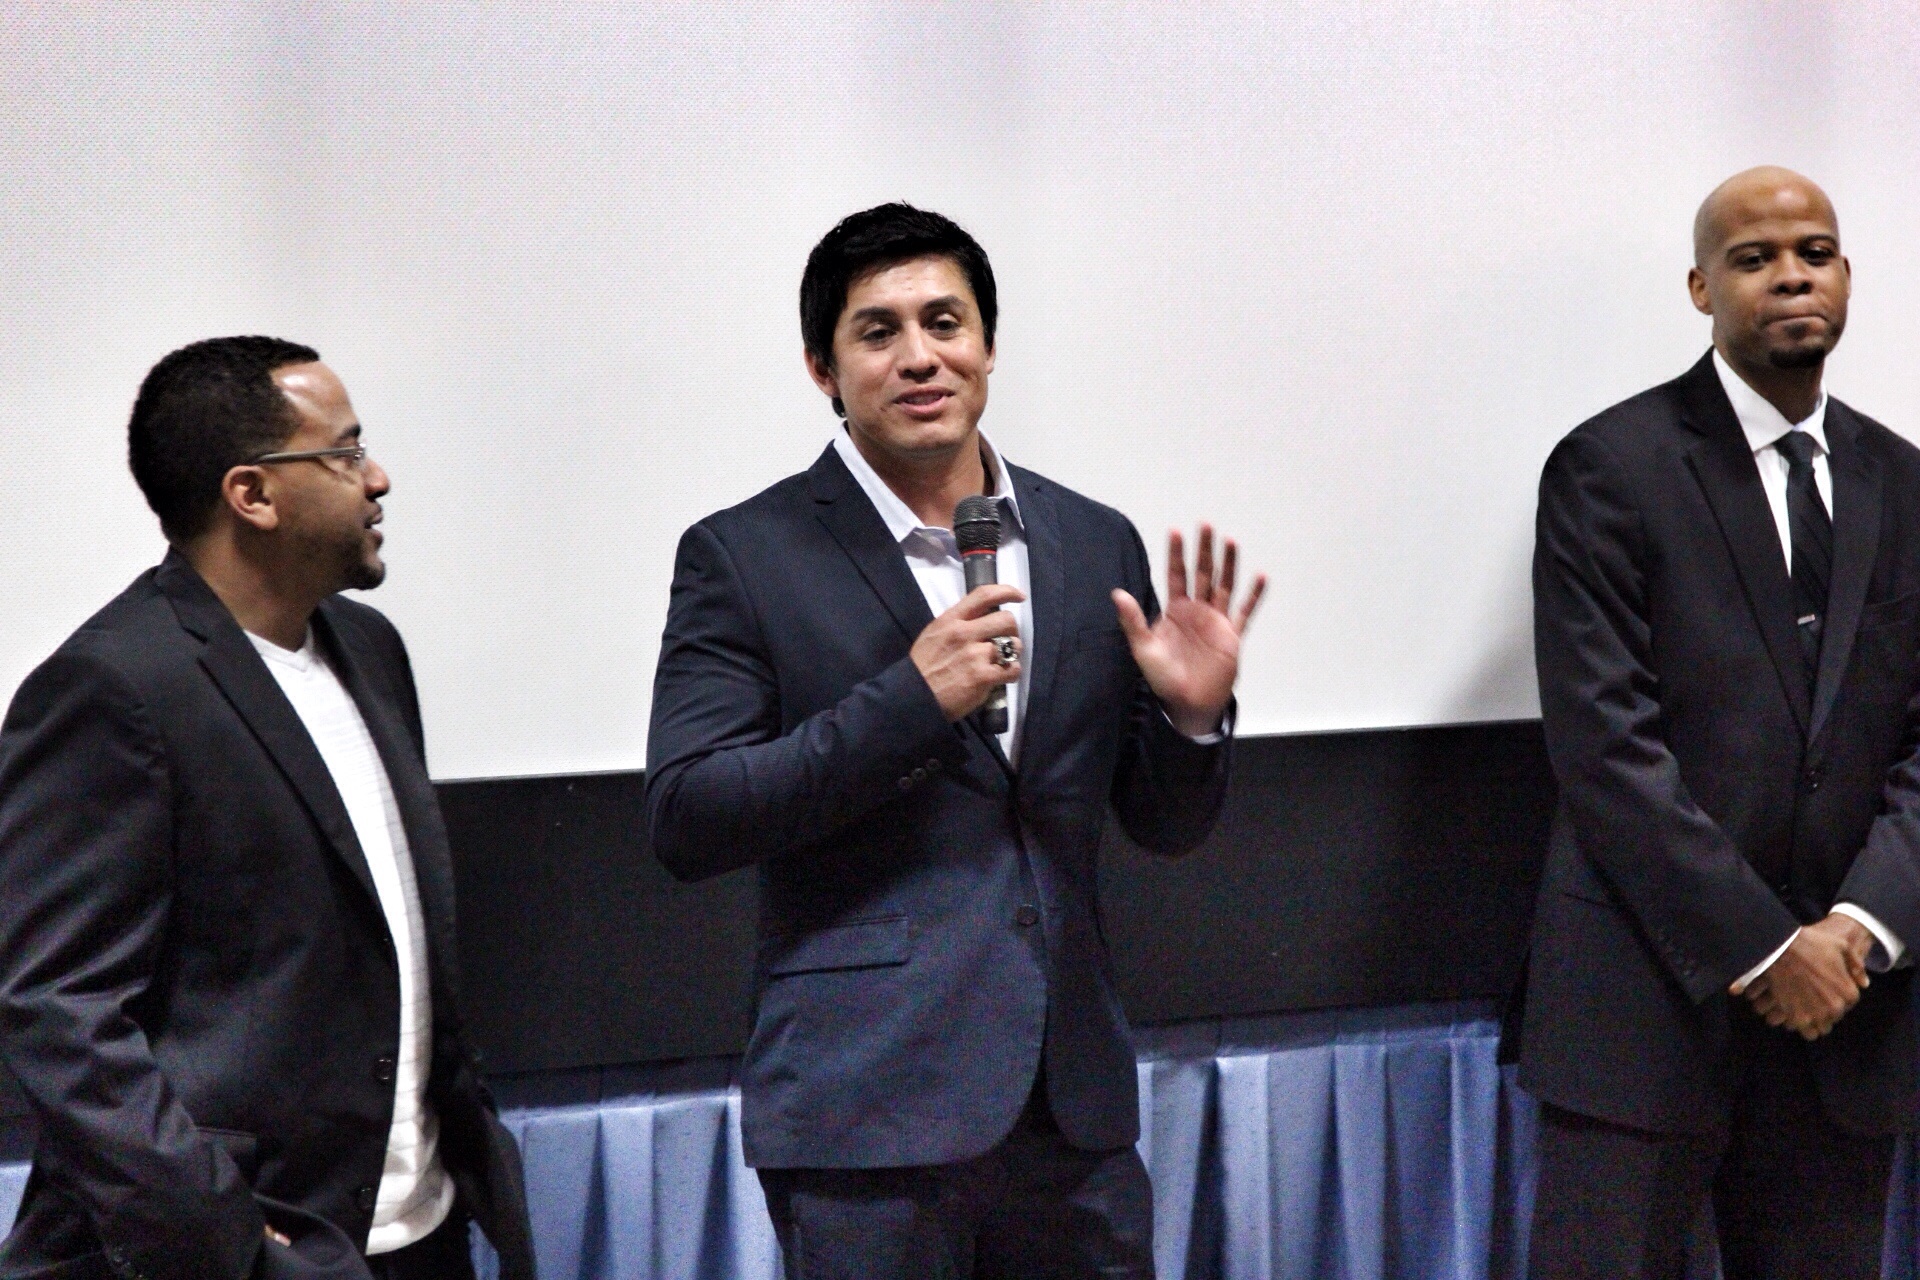 Director Reggie Titus, Executive producer and actor Pablo De Leon, and Producer and Actor Casey Smith